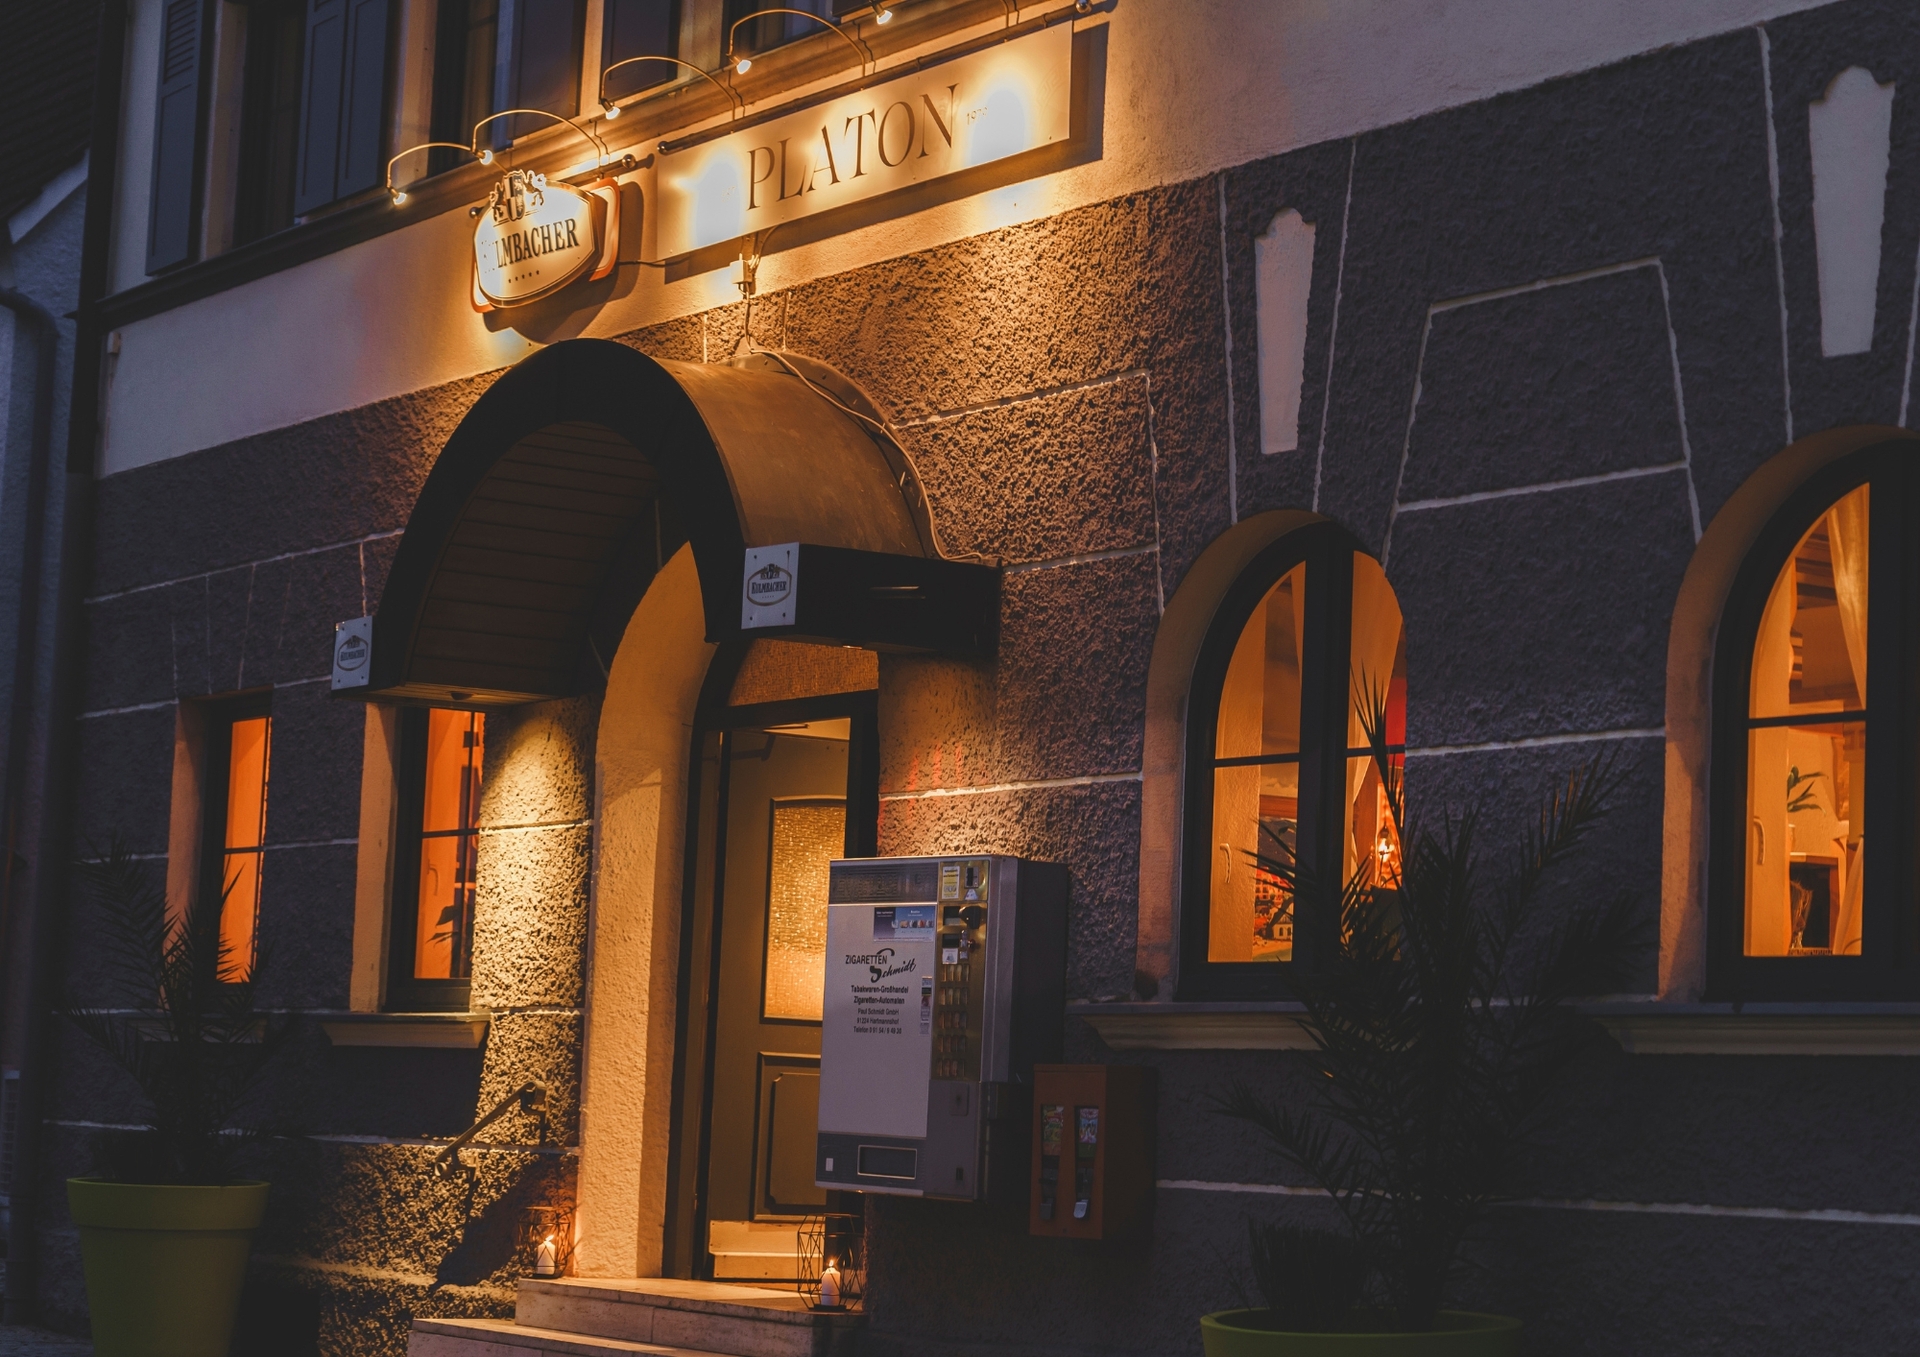 Abendansicht des Restaurants Platon mit beleuchtetem Schild über dem gewölbten Eingang und warm beleuchteten Fenstern, die eine gemütliche Atmosphäre in das Gebäude mit Steinfront einladen.